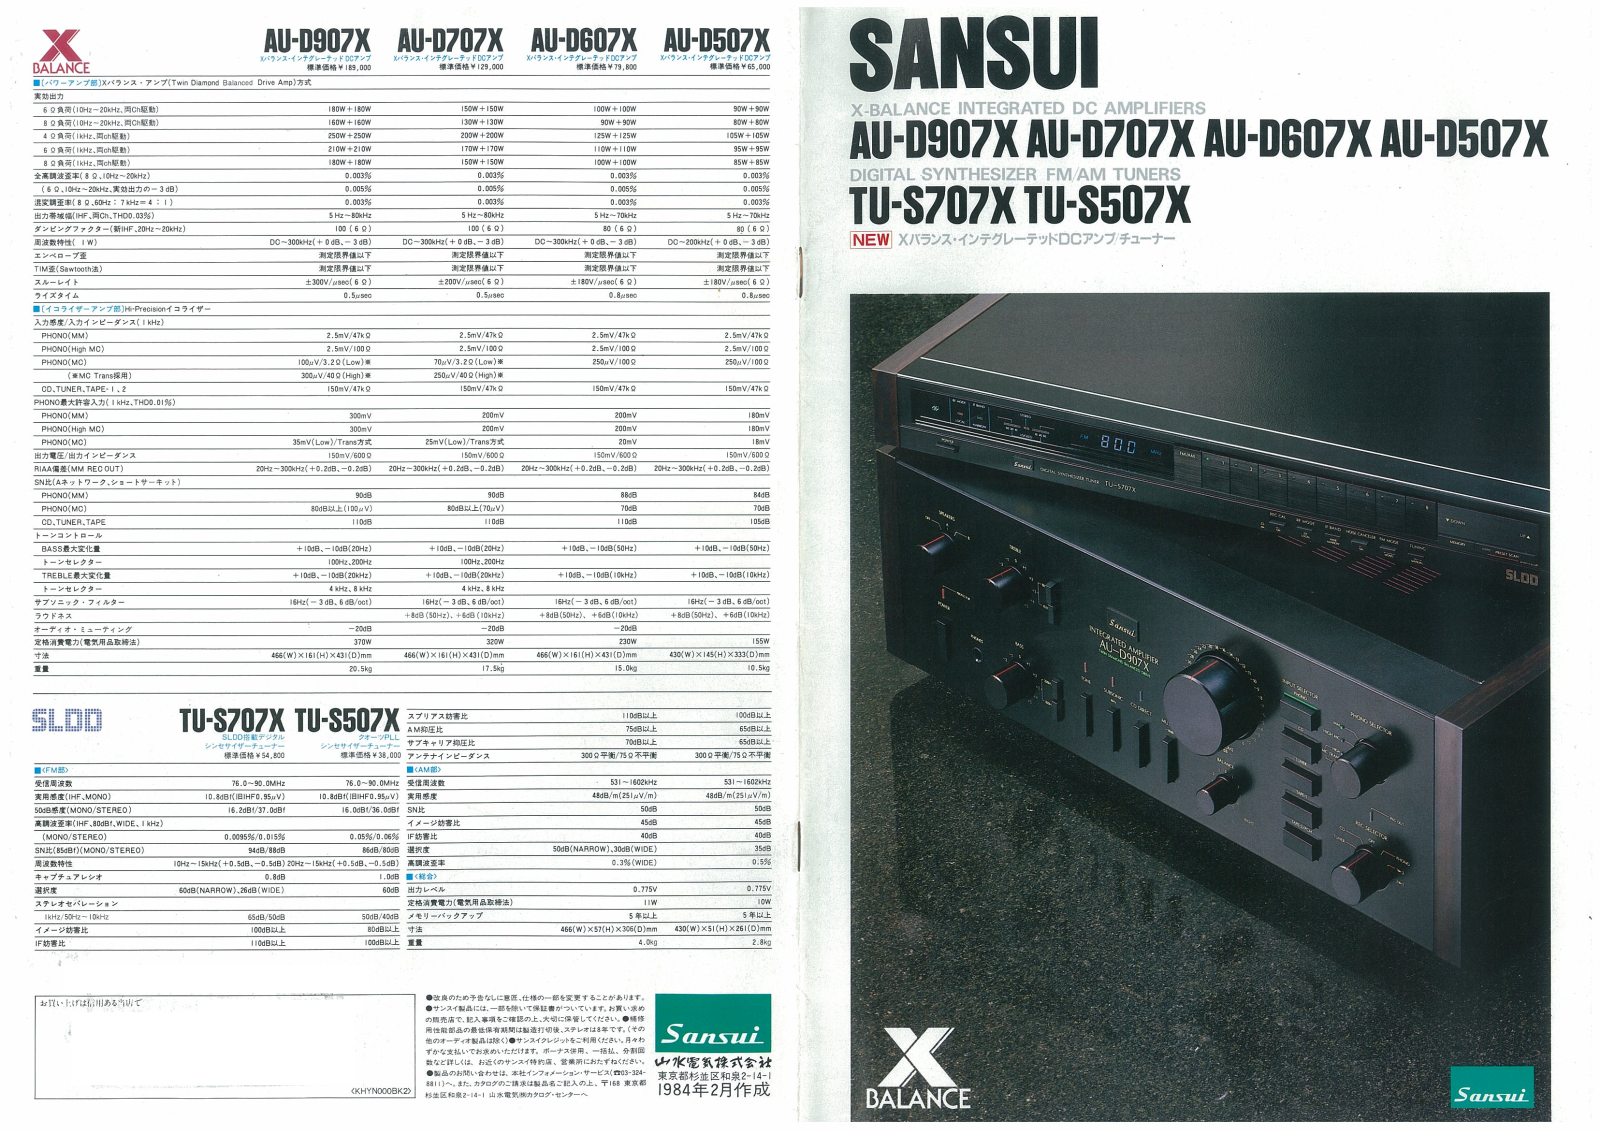 Sansui TU-S707X, TU-S507X, AU-D907X, AU-D707X, AU-D607X User Manual